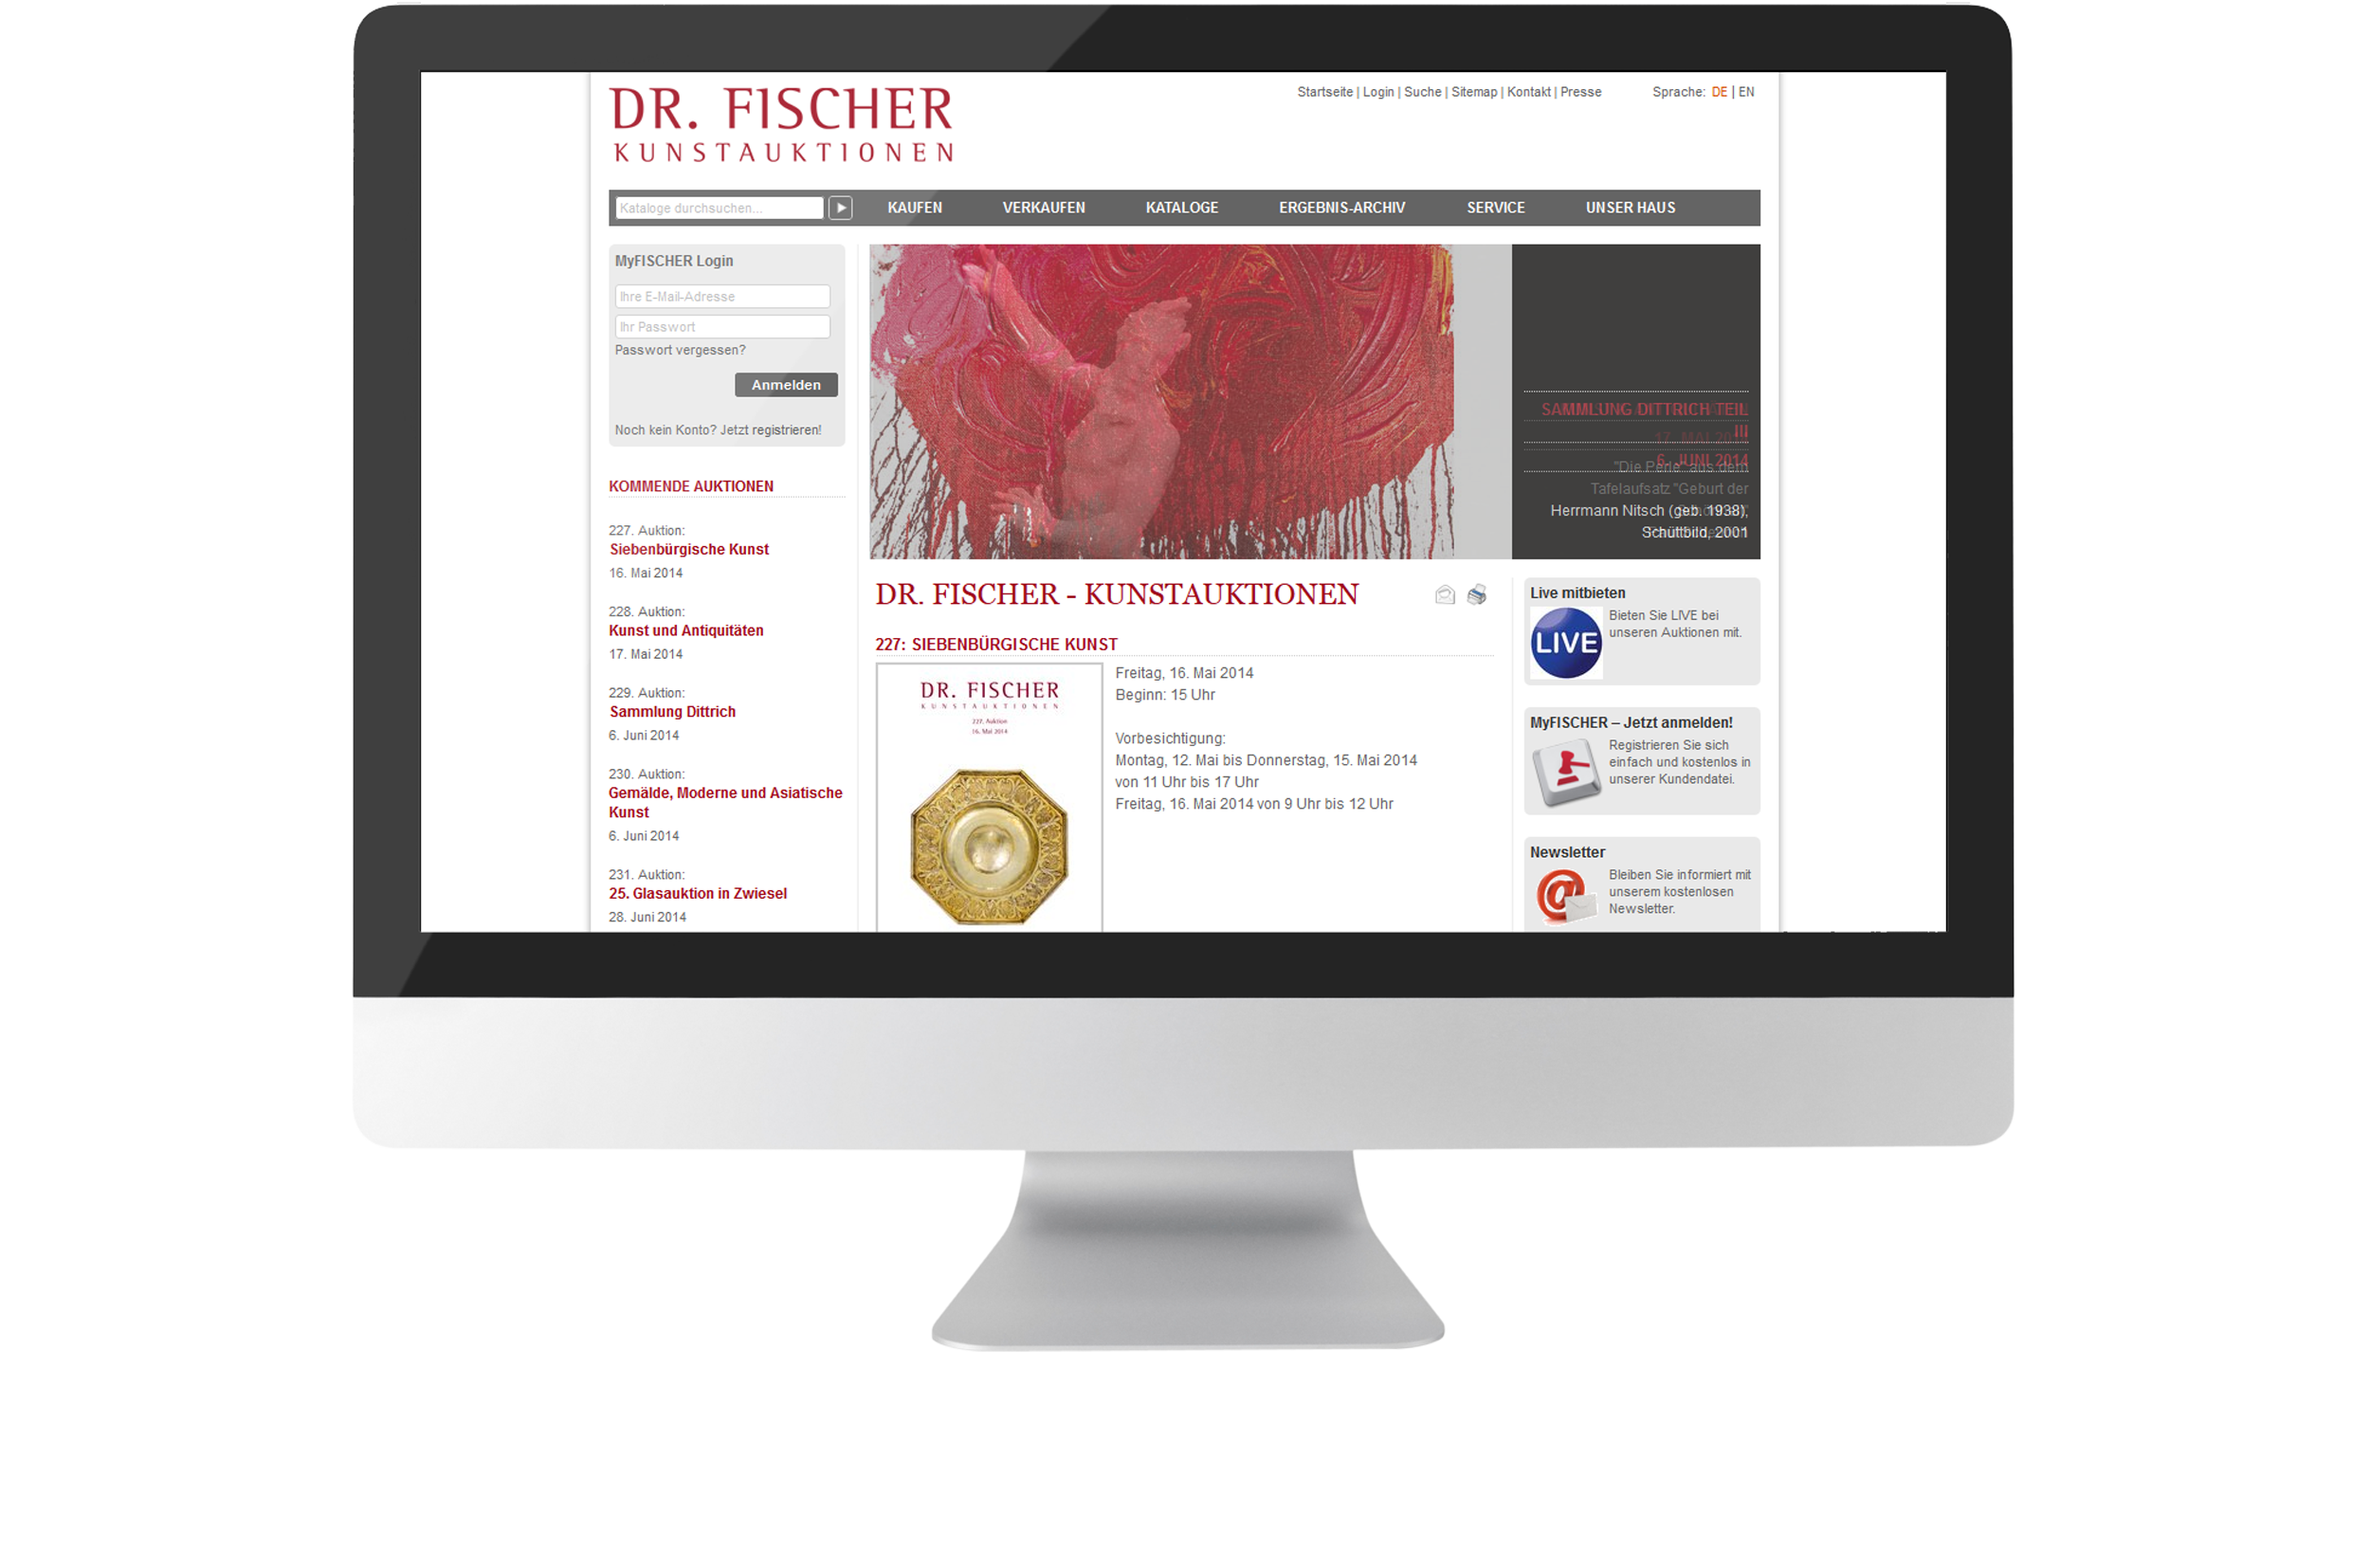 Bildmontage Auktionshaus Dr. Fischer GmbH & Co. KG Desktop Referenz Website 